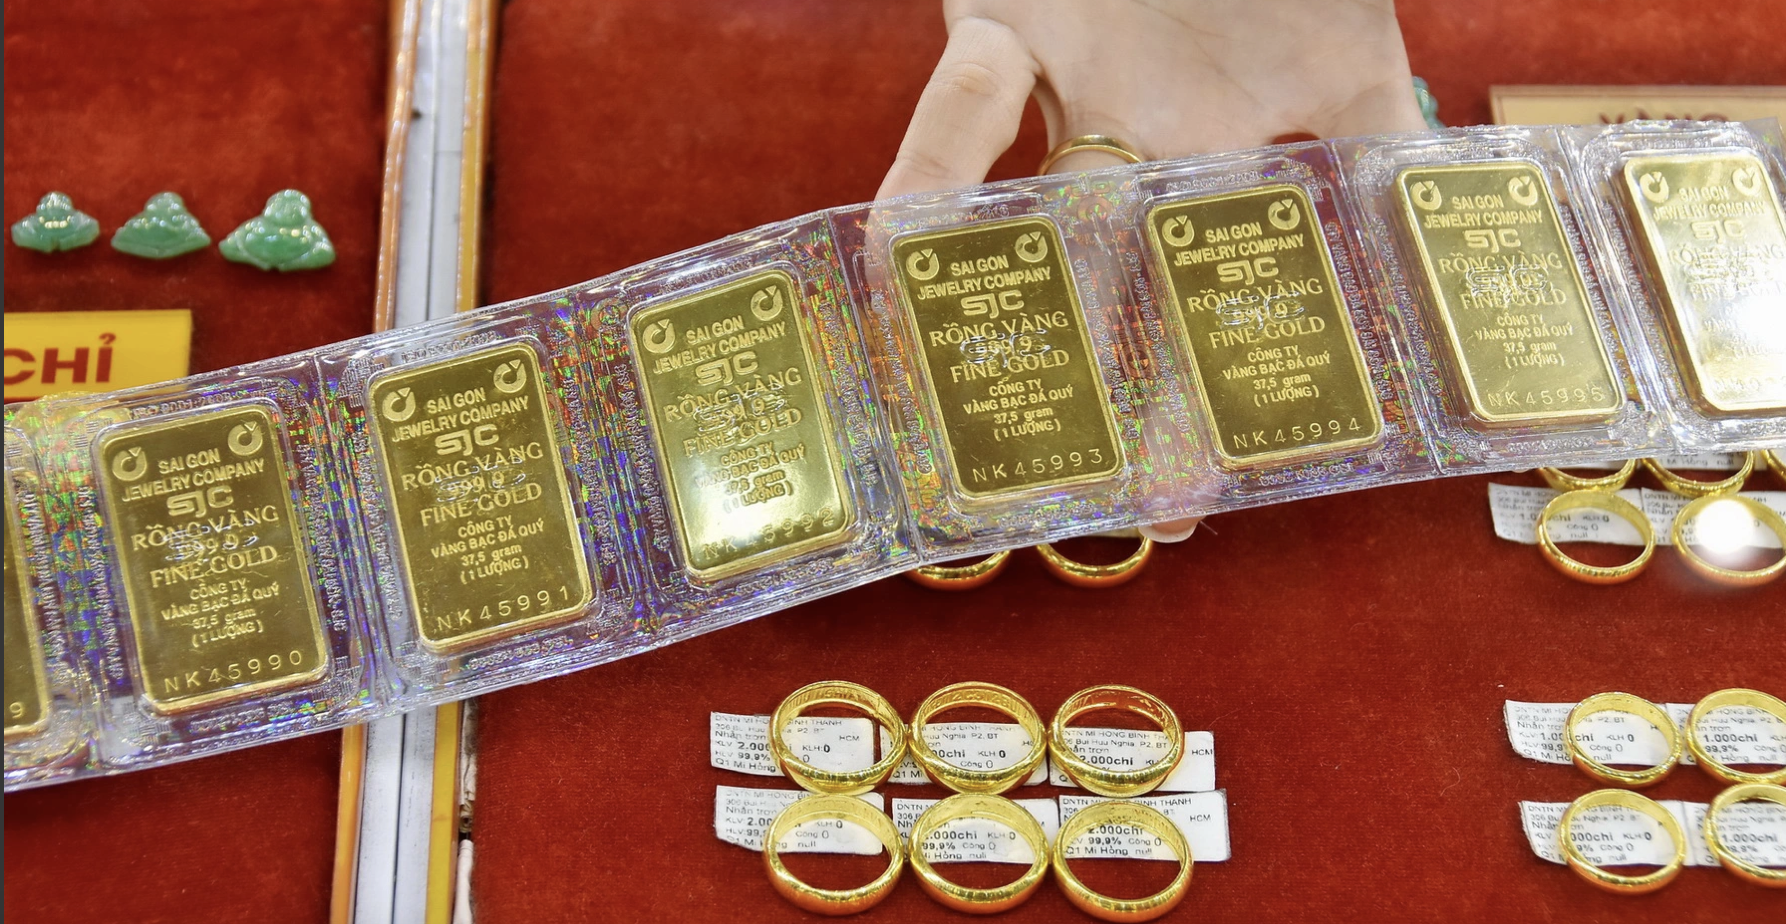 Vàng SJC tăng "sốc" 85 triệu đồng/lượng, Ngân hàng Nhà nước tuyên bố tăng cung vàng để chặn chênh lệch- Ảnh 1.